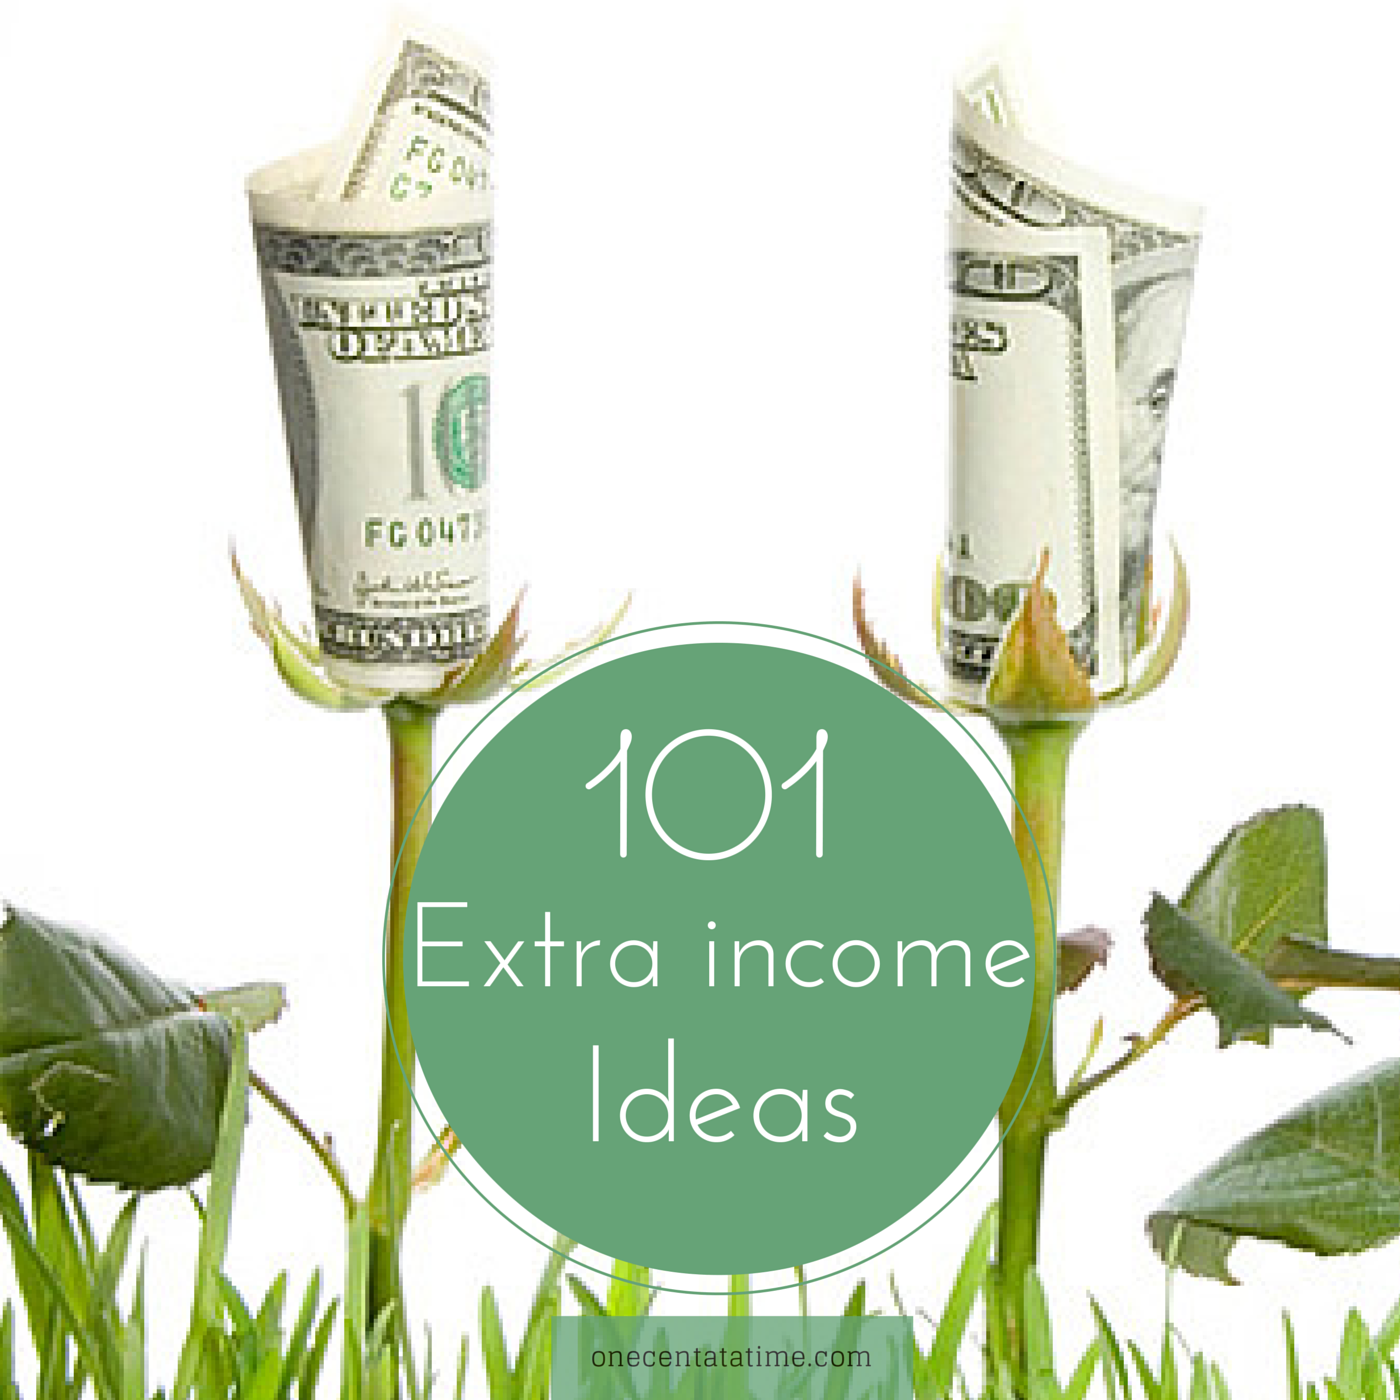 101 Side hustle Ideas